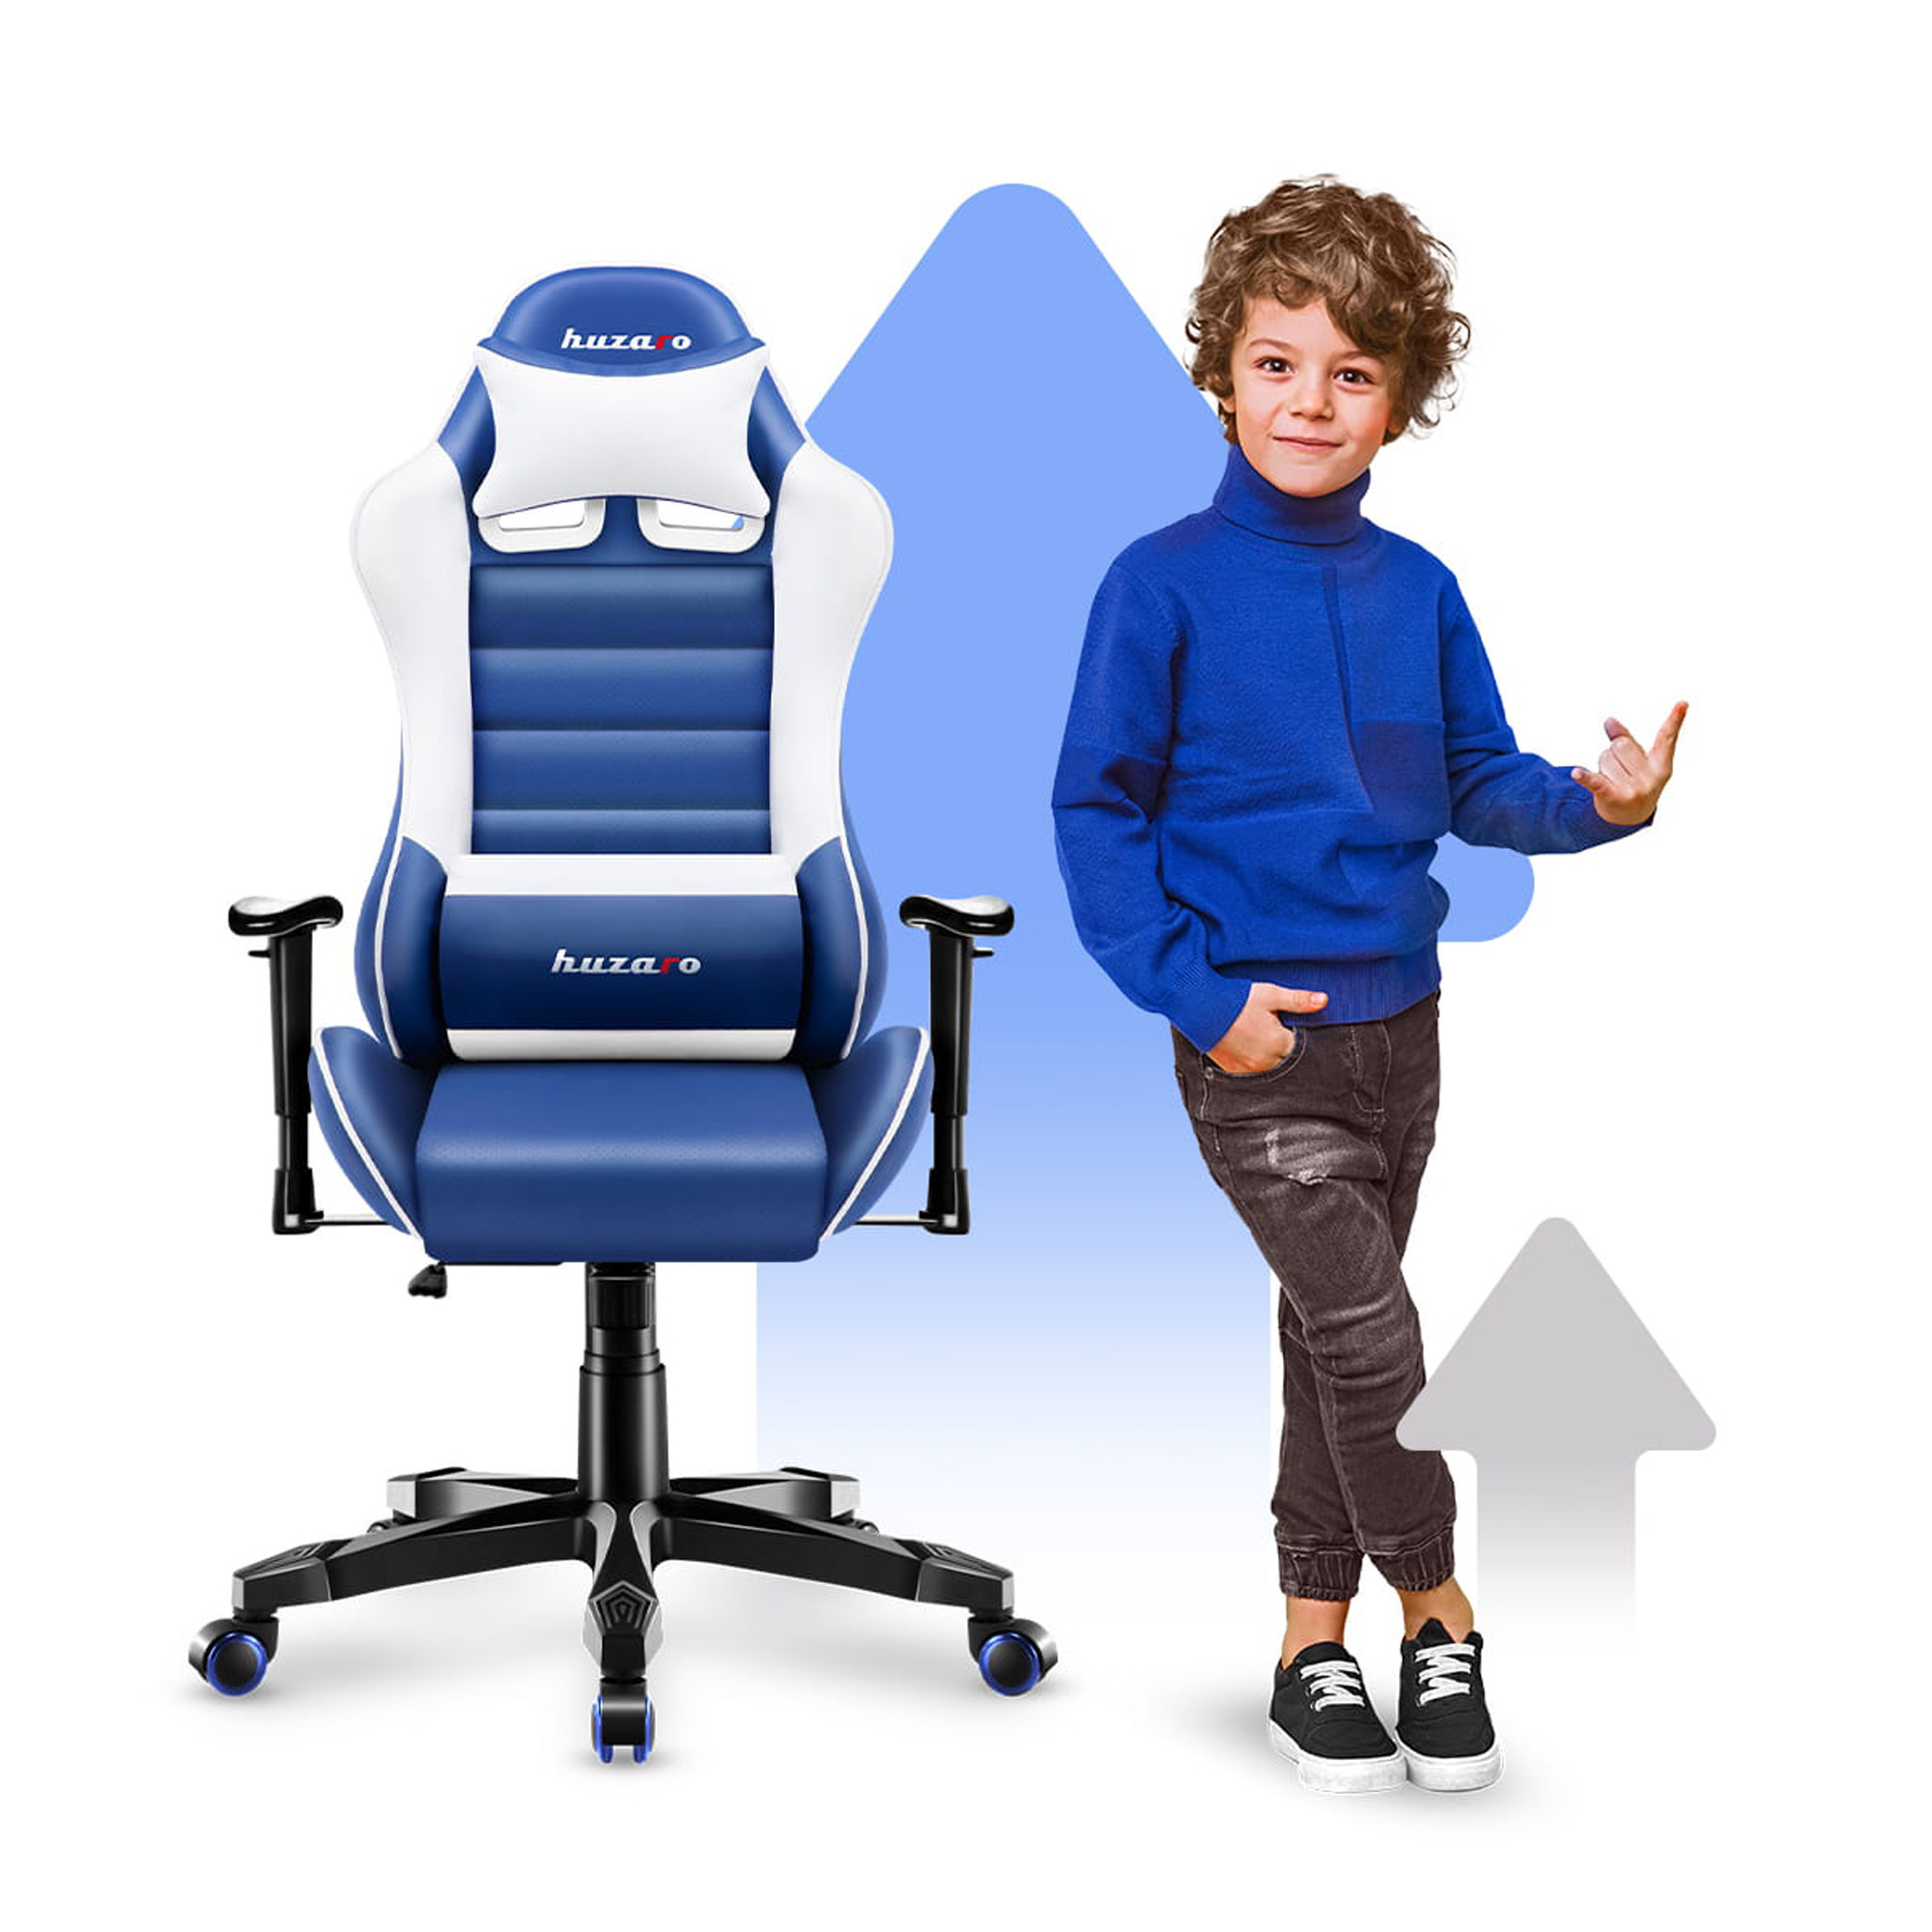 Detská herná stolička Ranger - 6.0 modrá